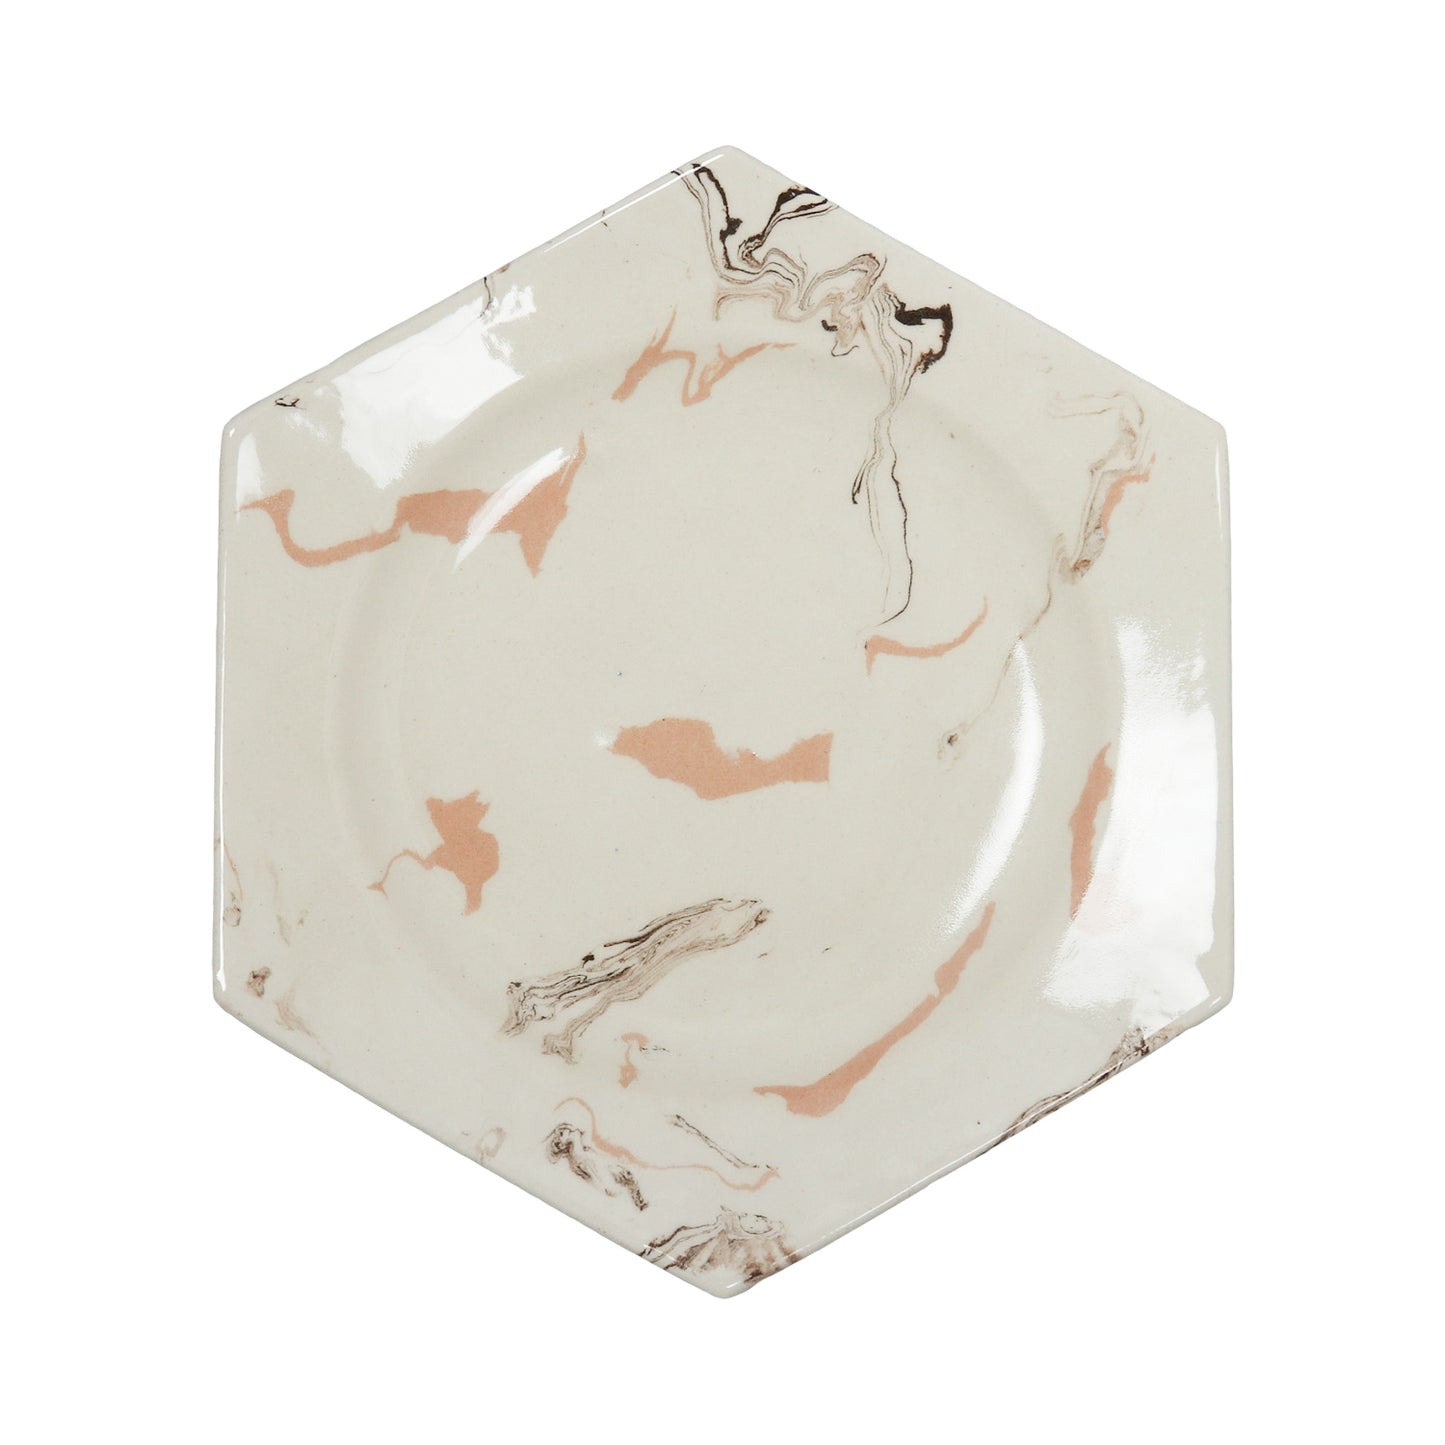 Cream Swirl Earthenware Hexagonal Plate